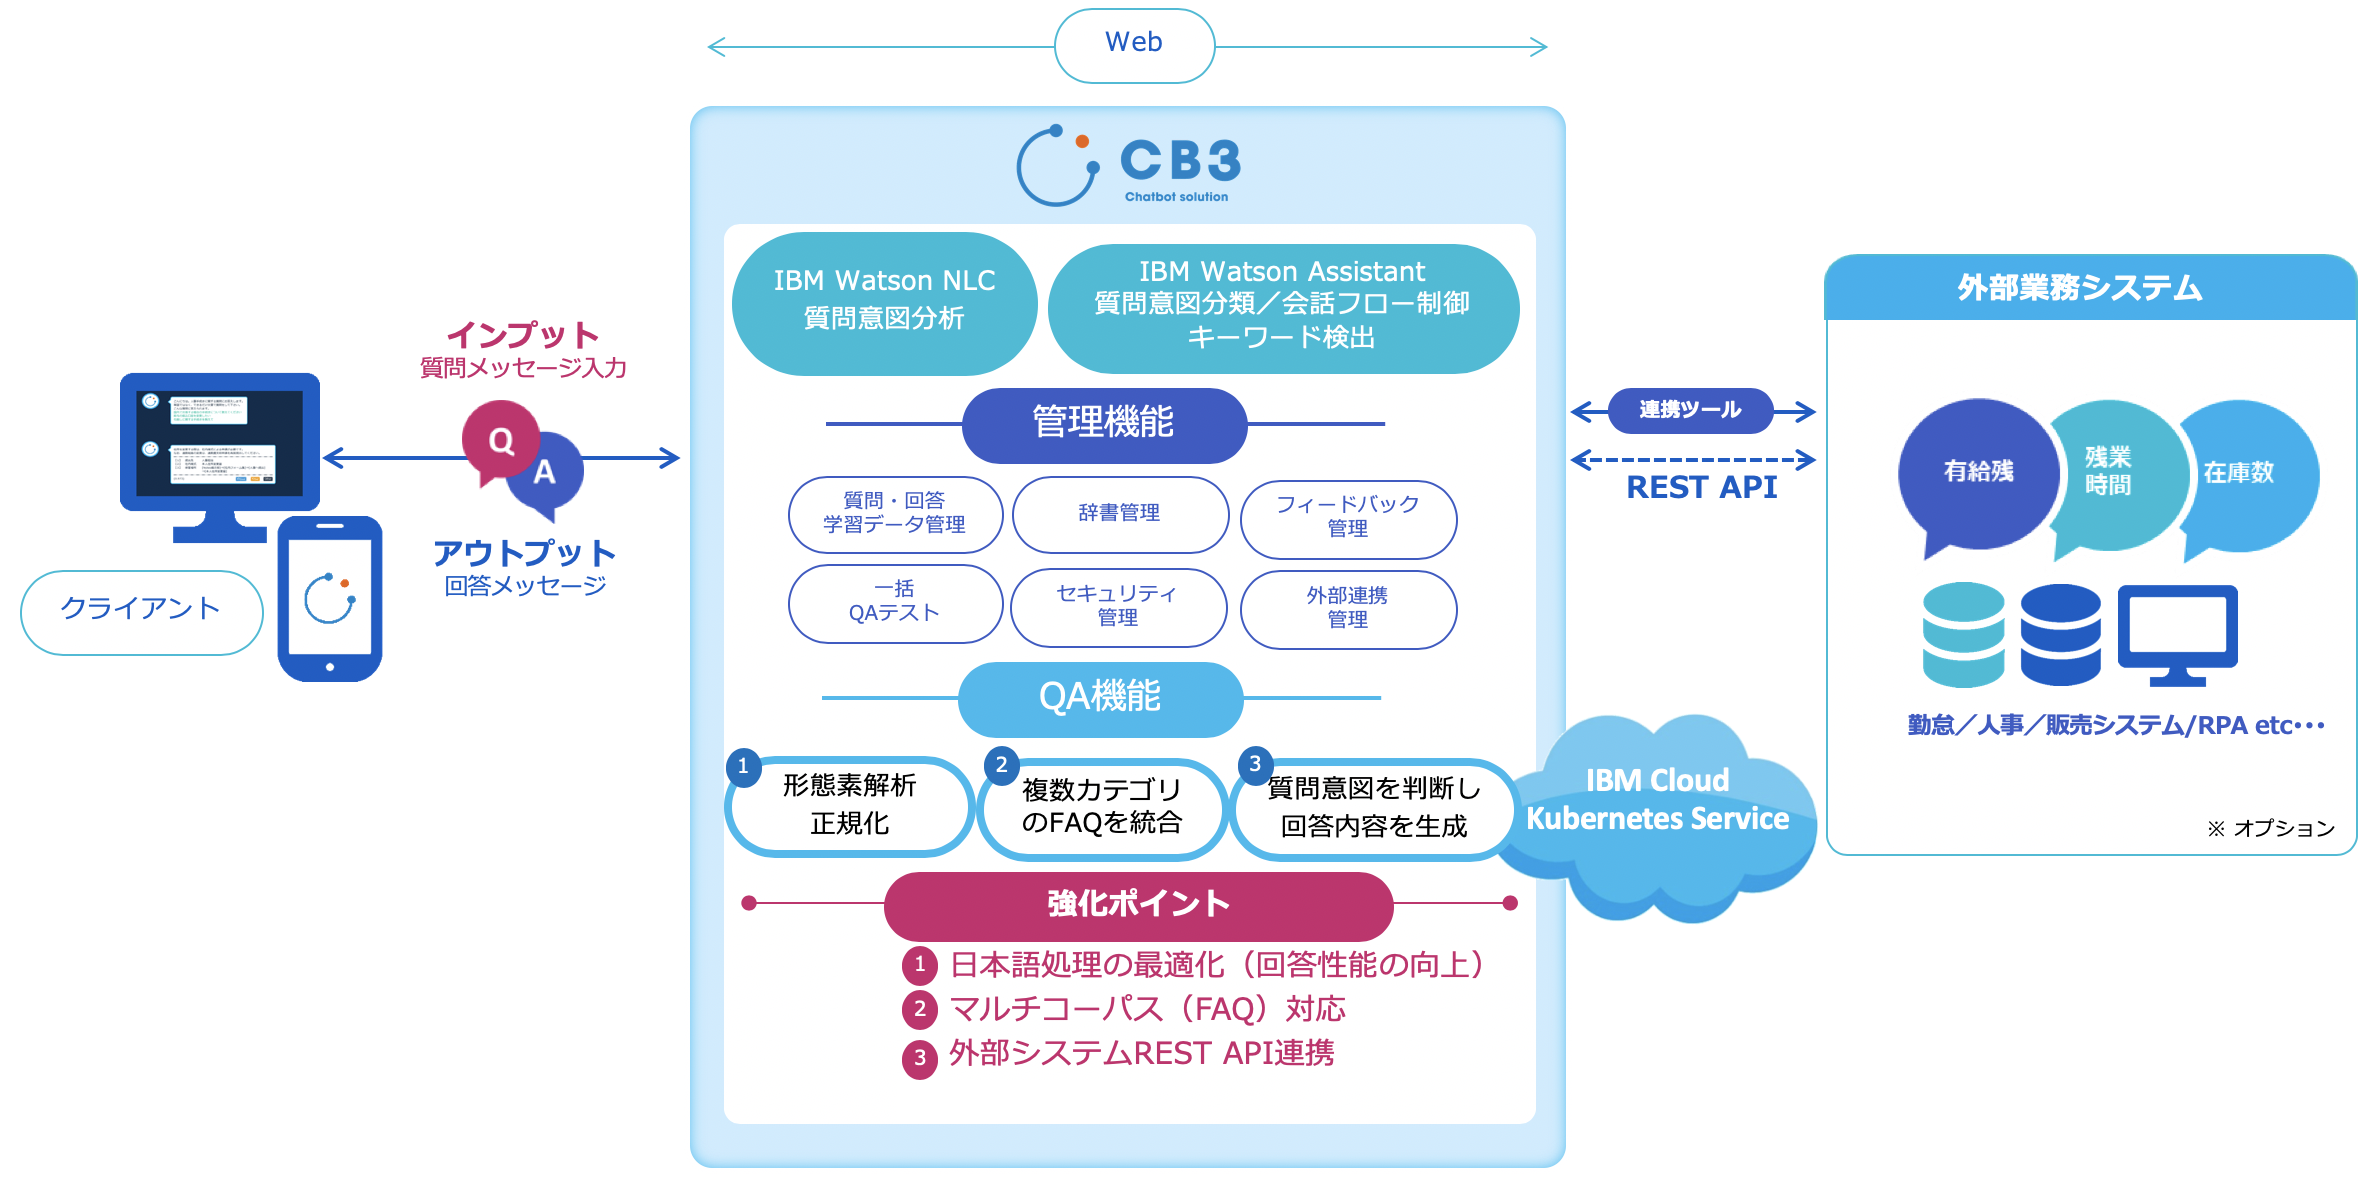 CB3の機能や仕組みを表したシステムイメージの図